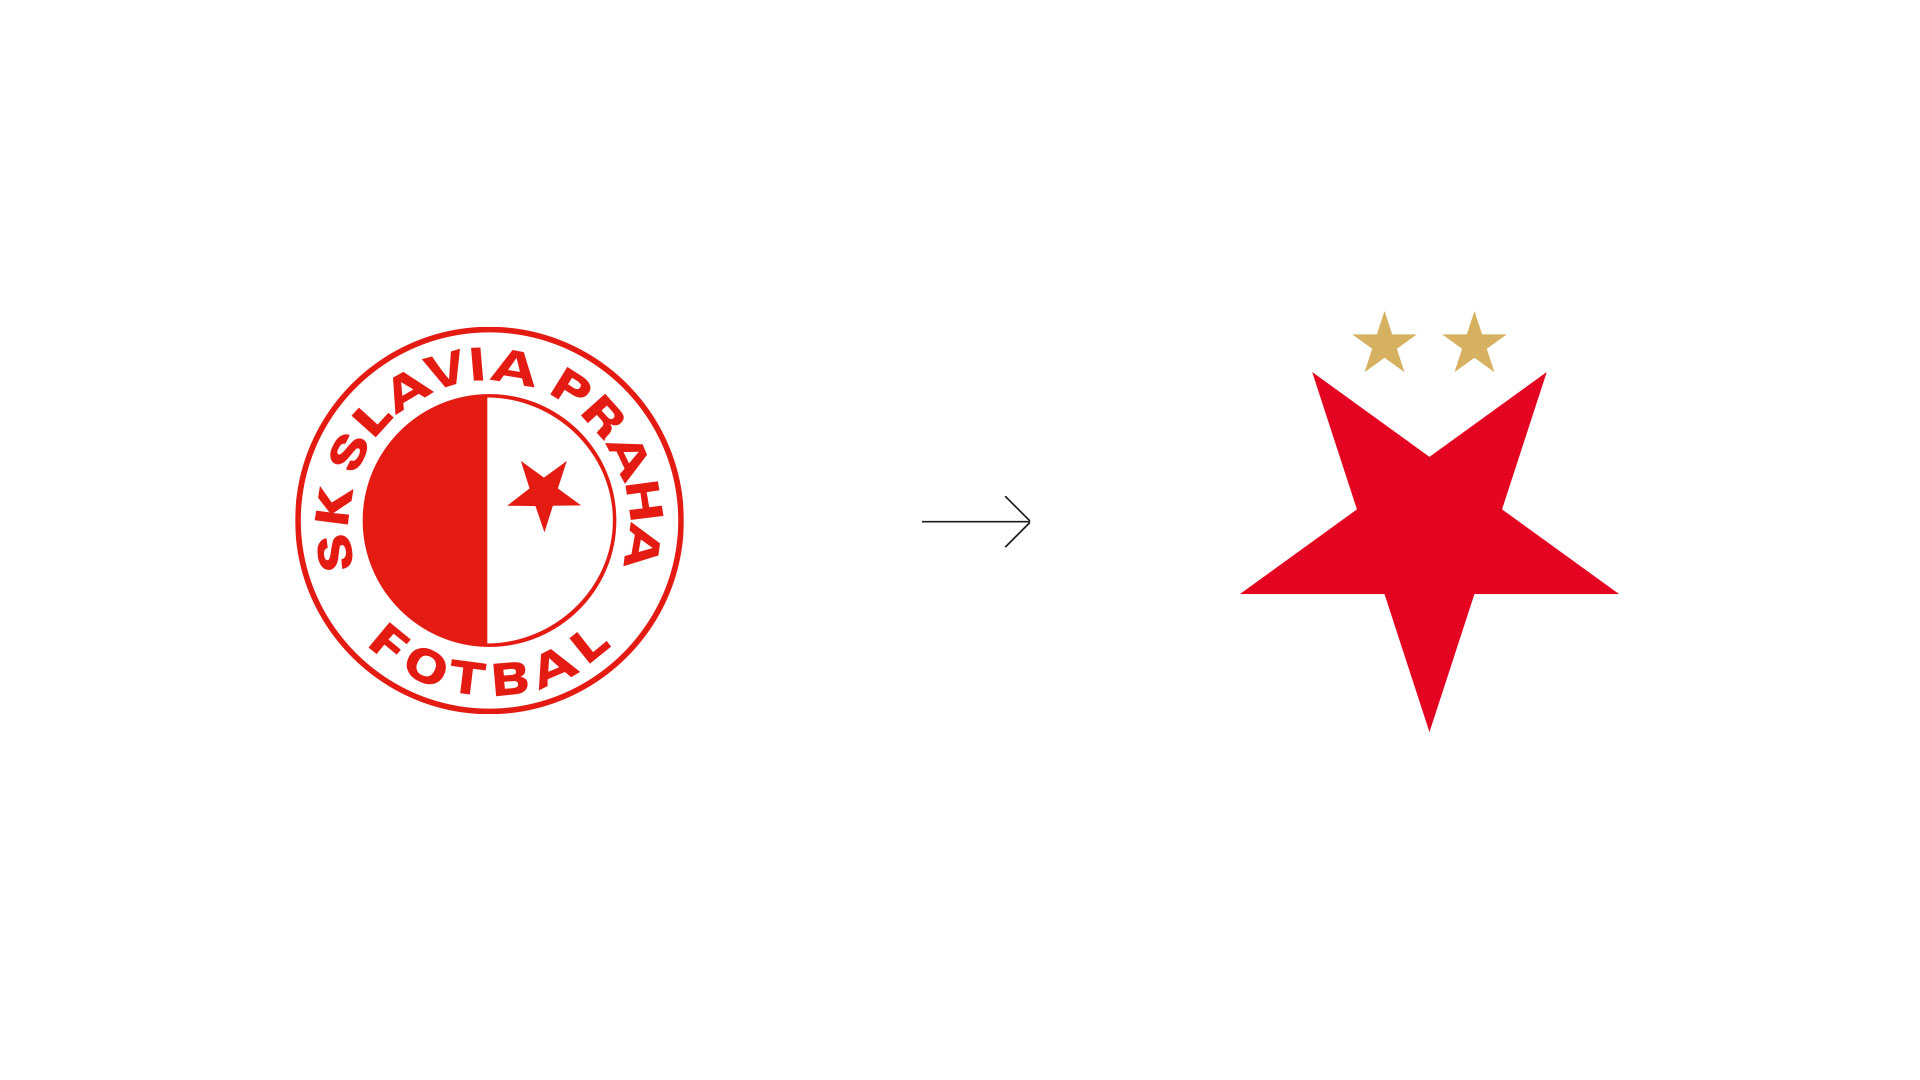 Slavia Rebranding - Old & New Logo